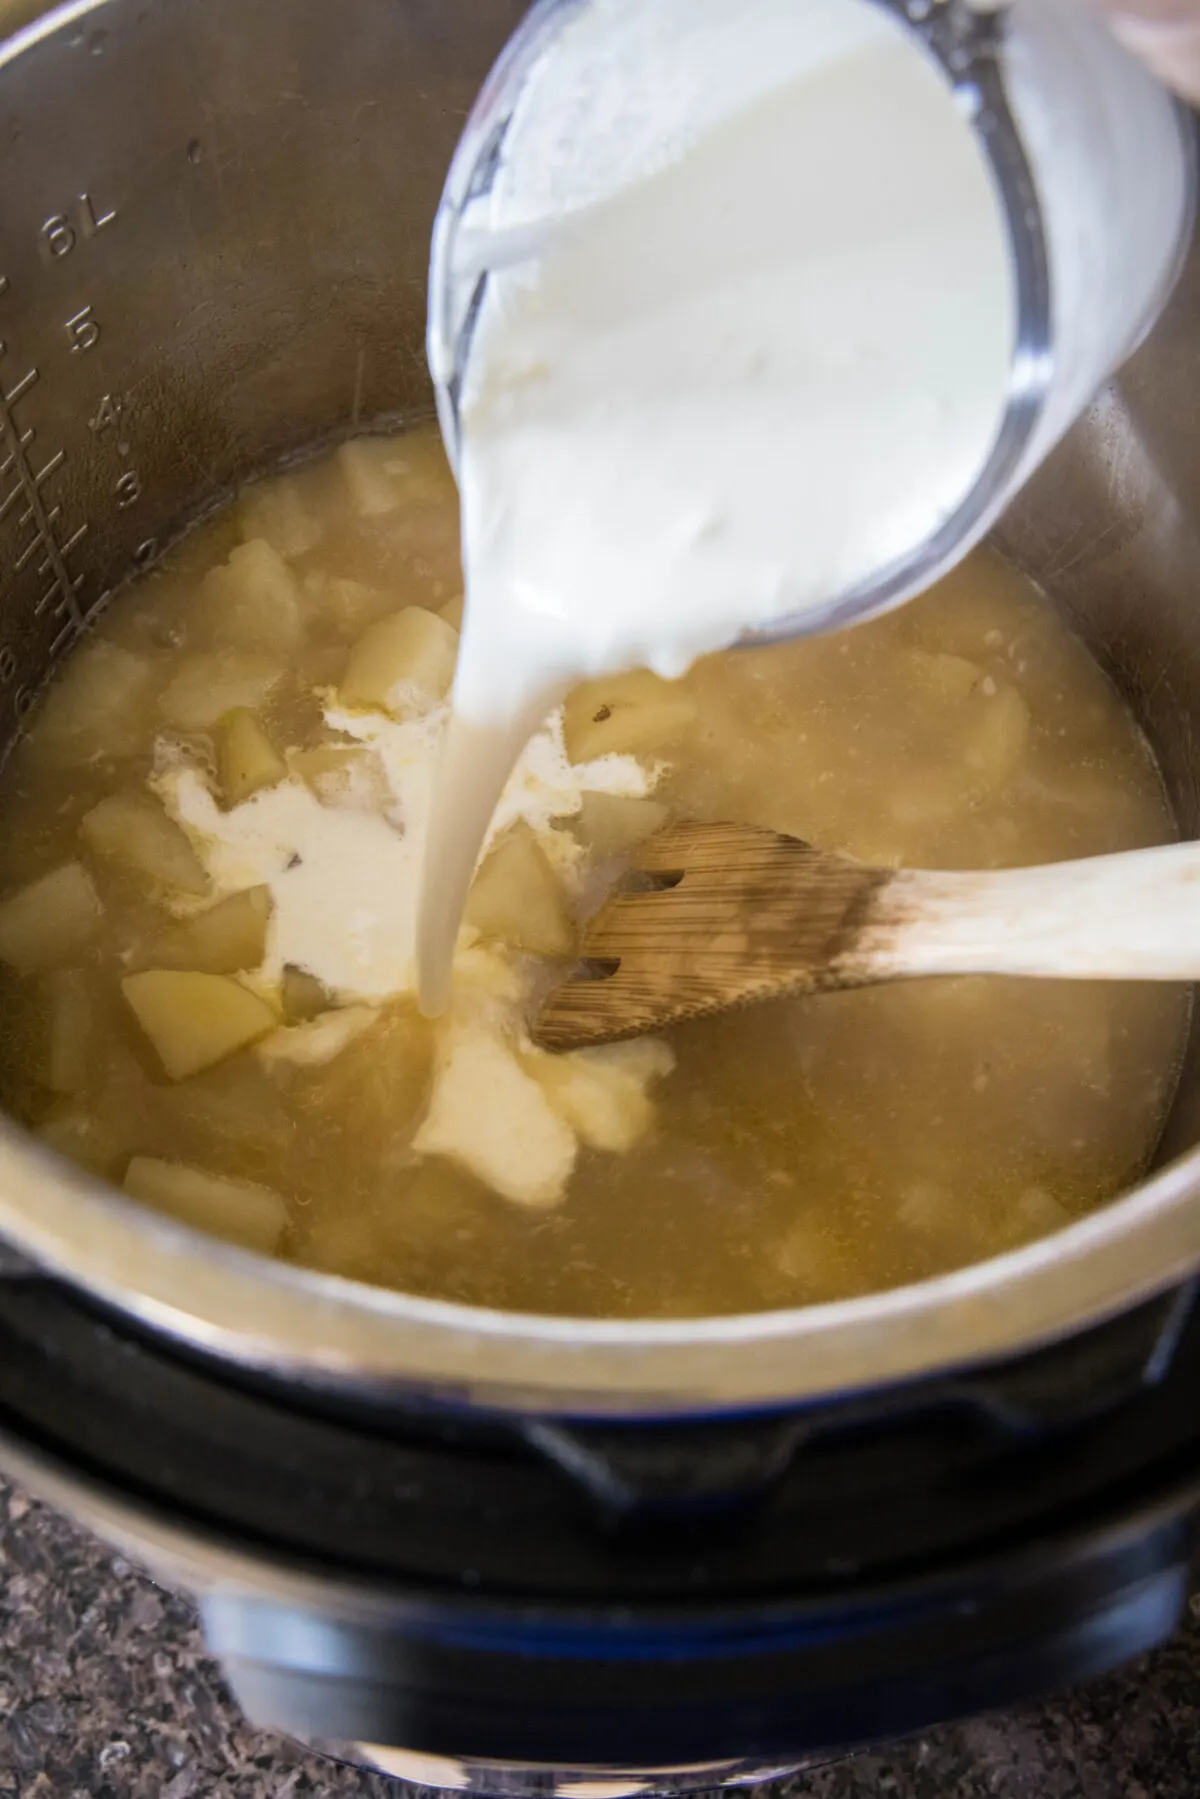 A pyrex pouring cream into a pot of potato soup with a wooden spoon.